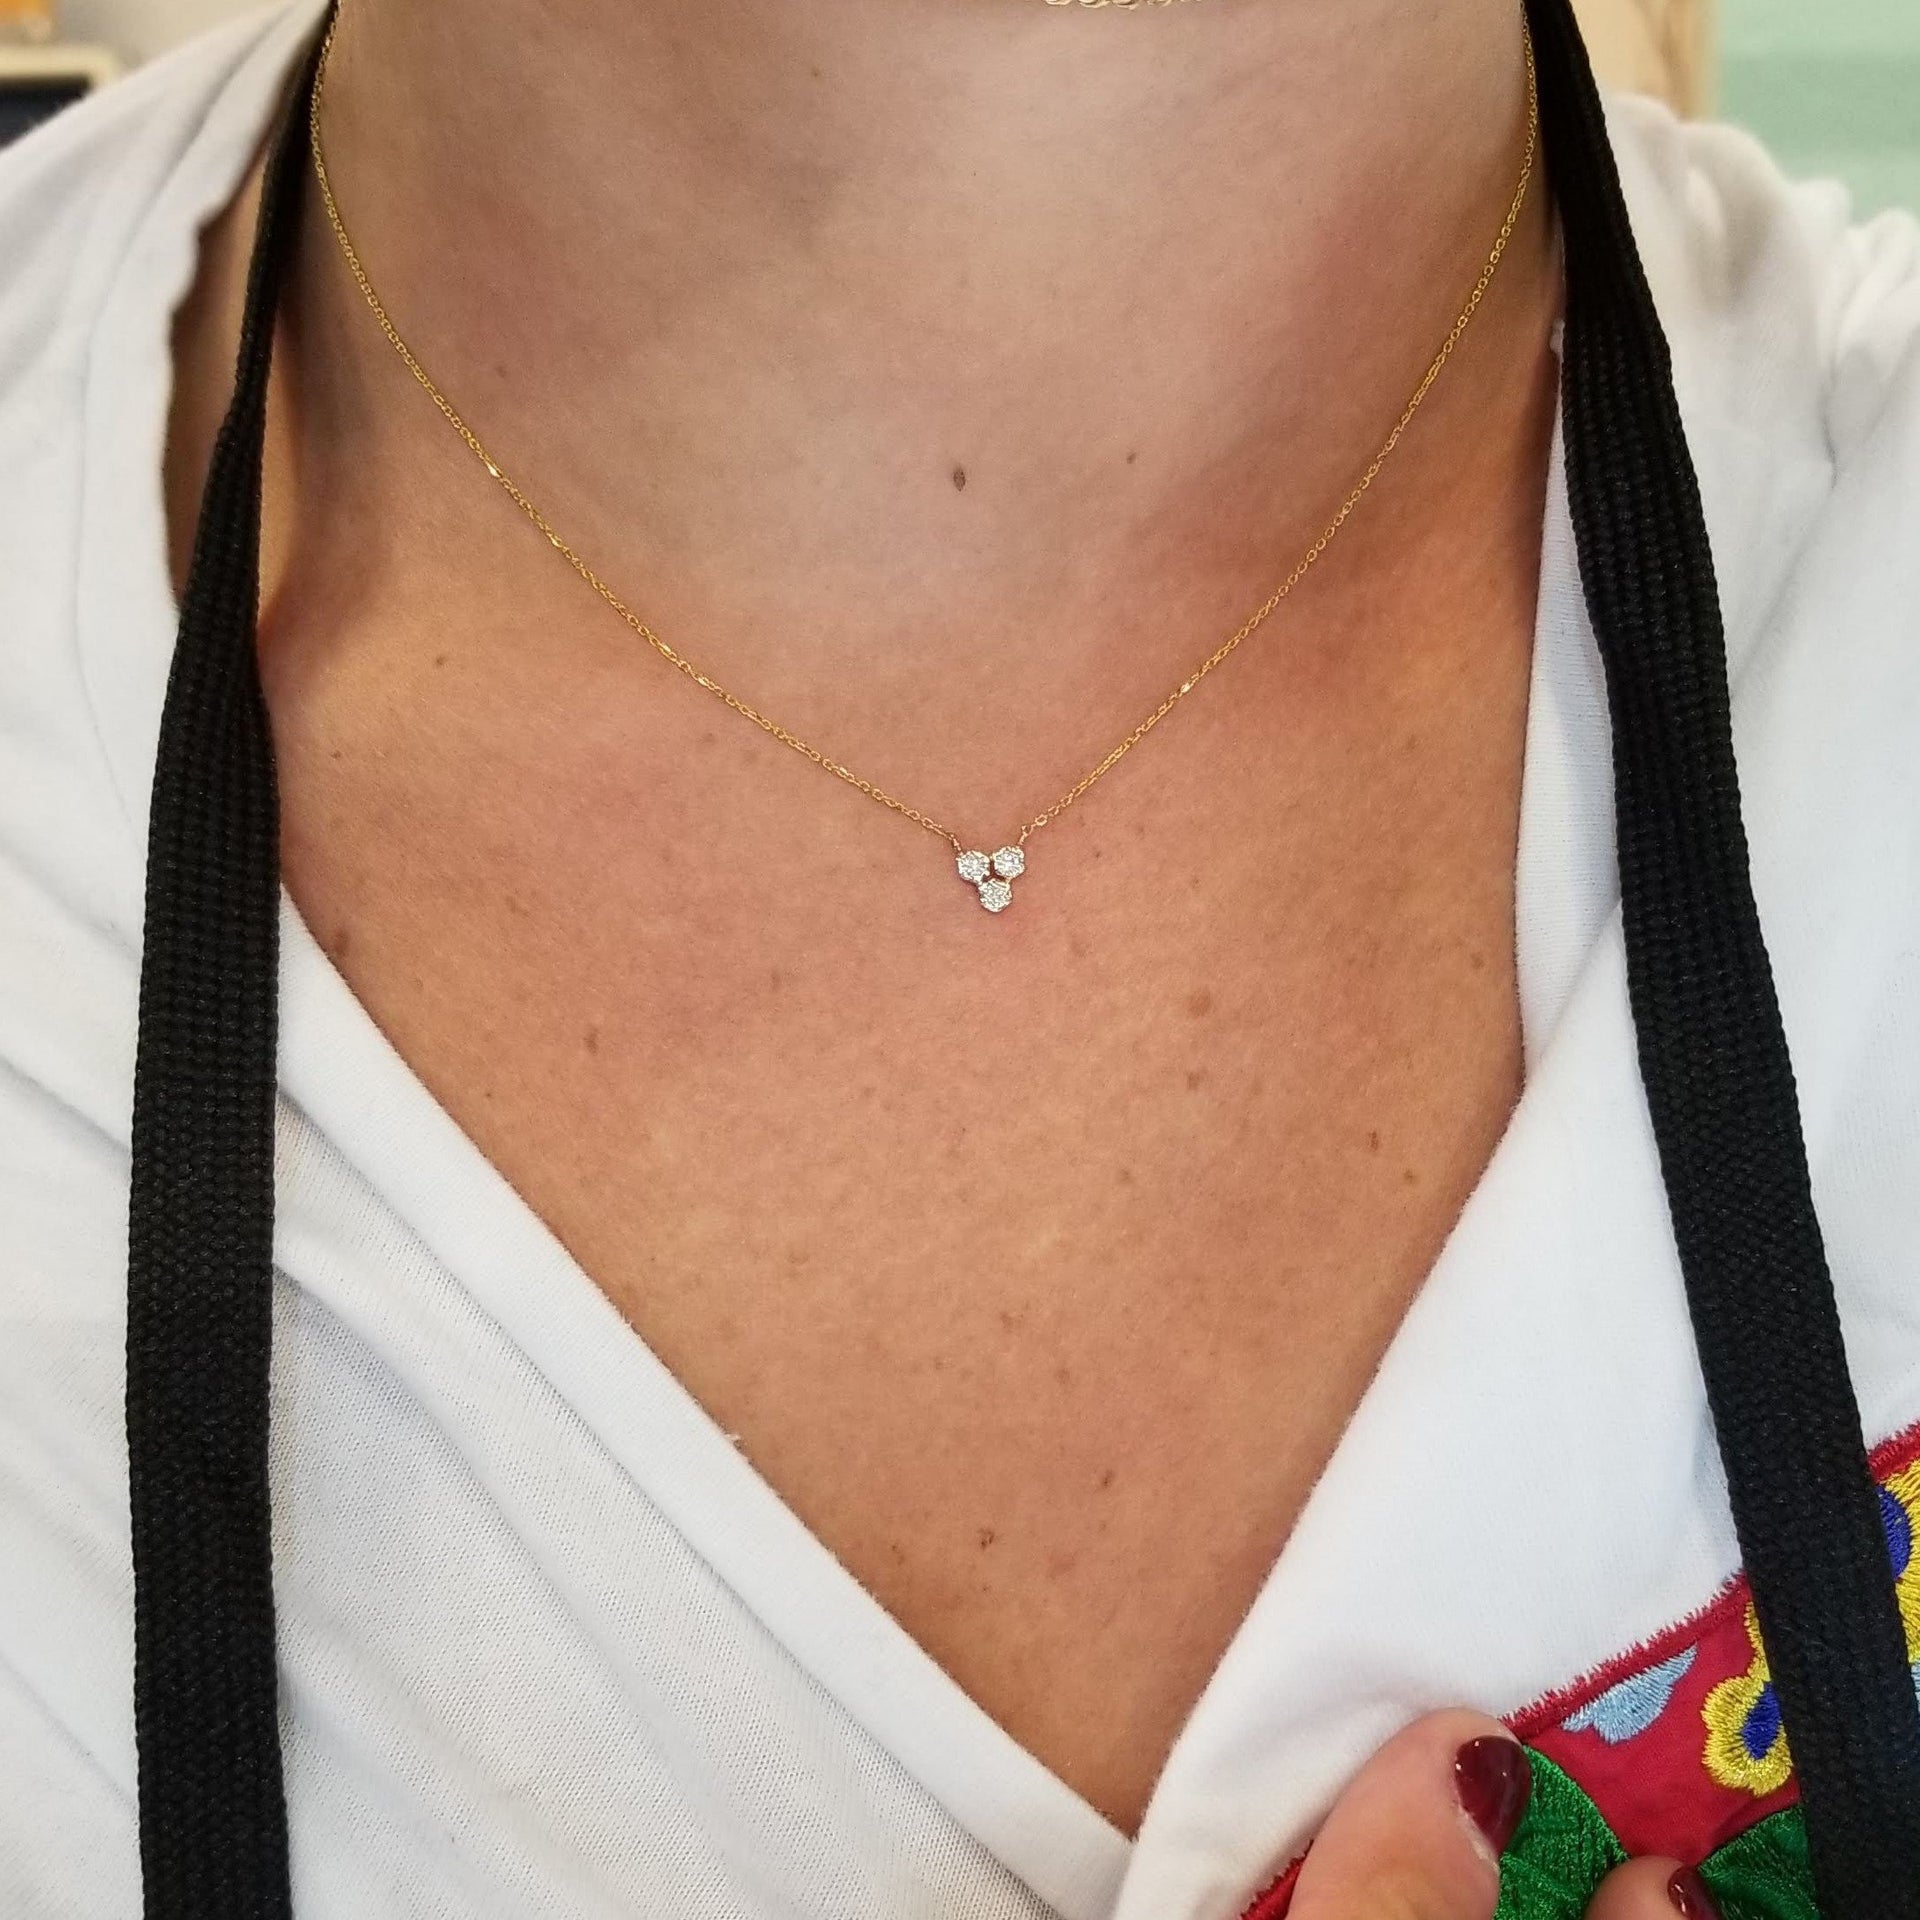 Diamond Pave Heart Necklace - 165-01441